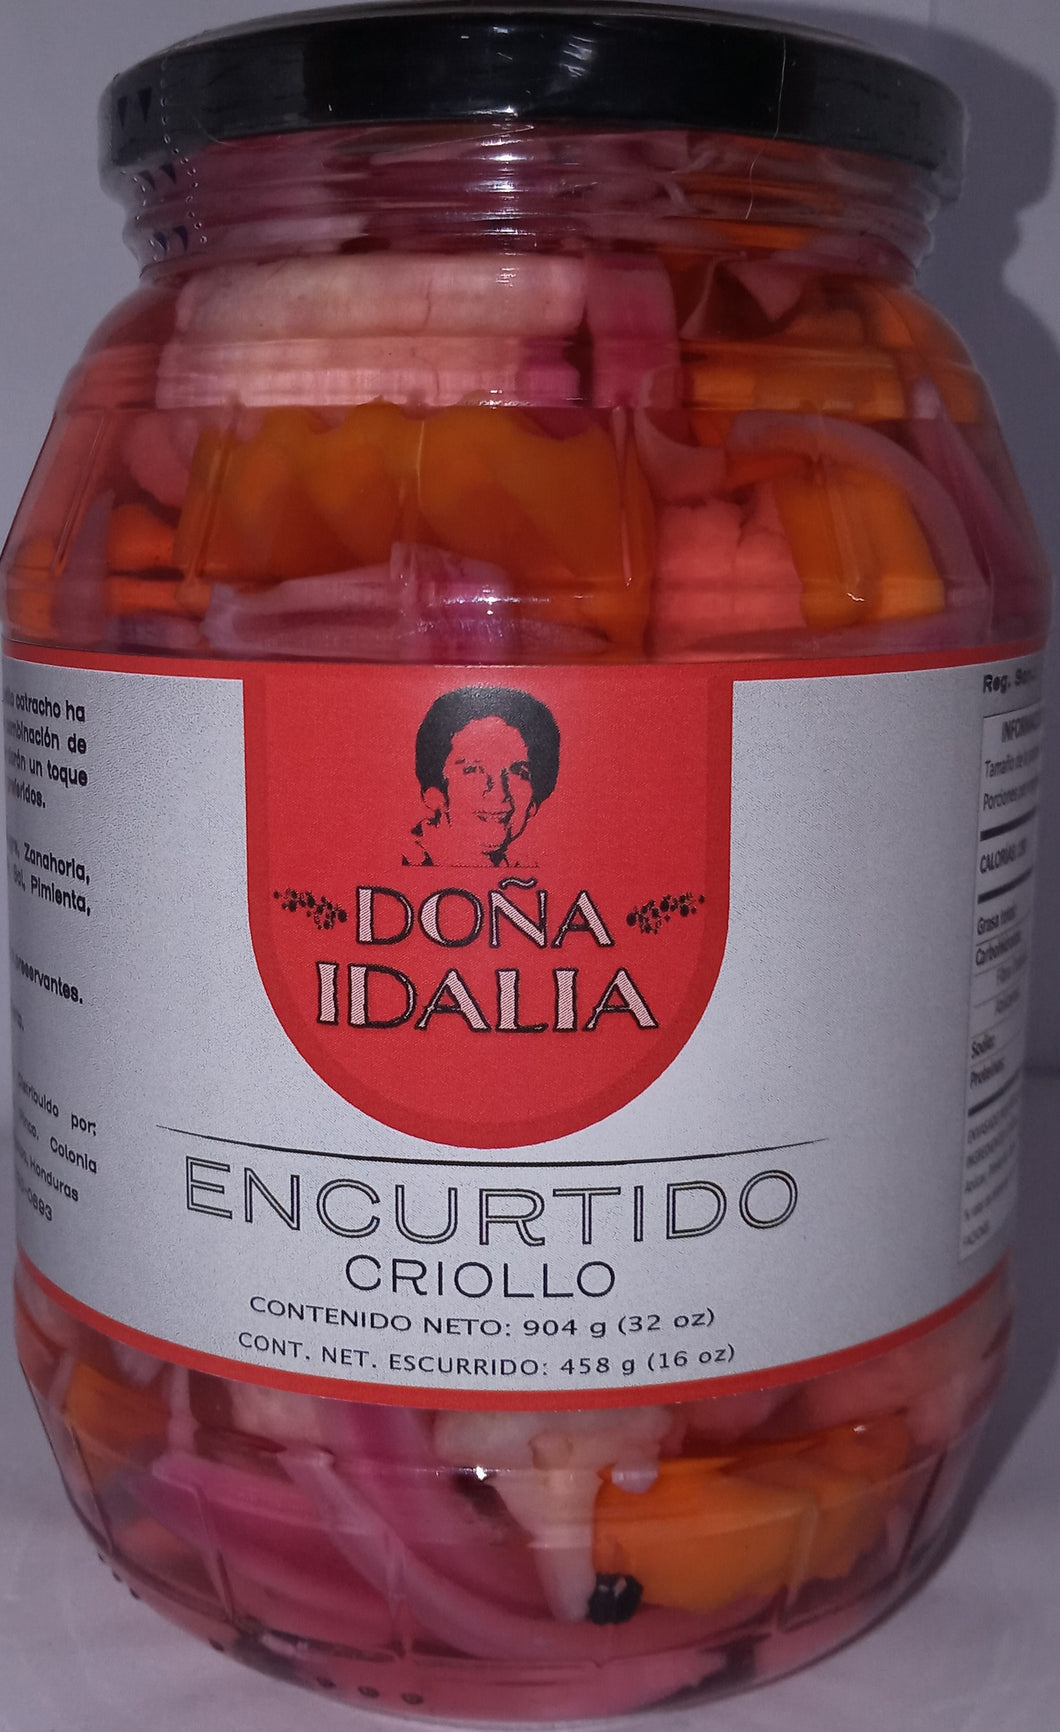 Encurtido criollo Doña idalia 904g